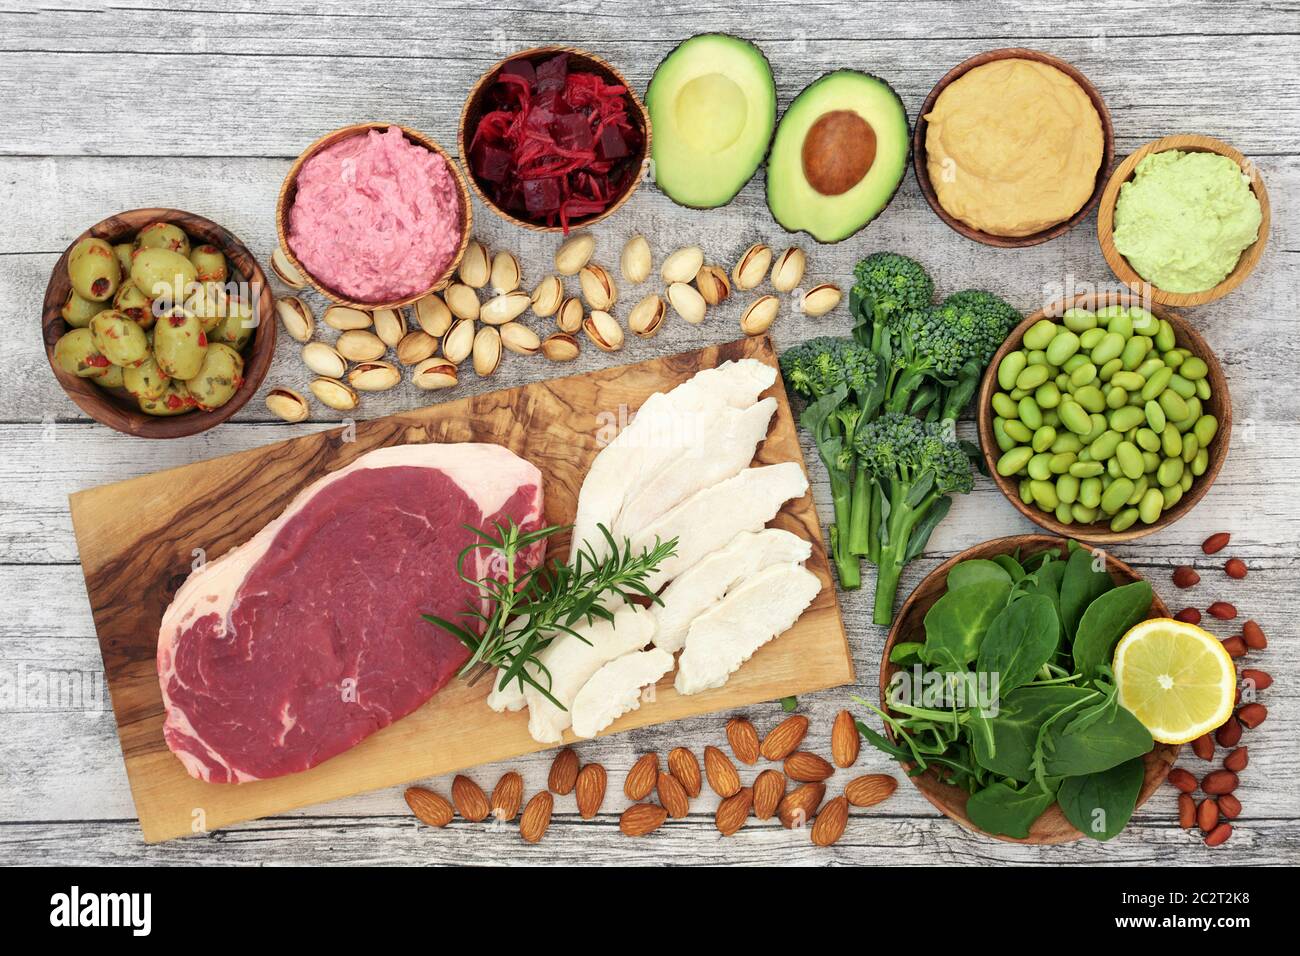 Aliments santé pour la vitalité, l'énergie et la forme physique riches en protéines, vitamines, anthocyanines, antioxydants, oméga 3 et protéines. Banque D'Images